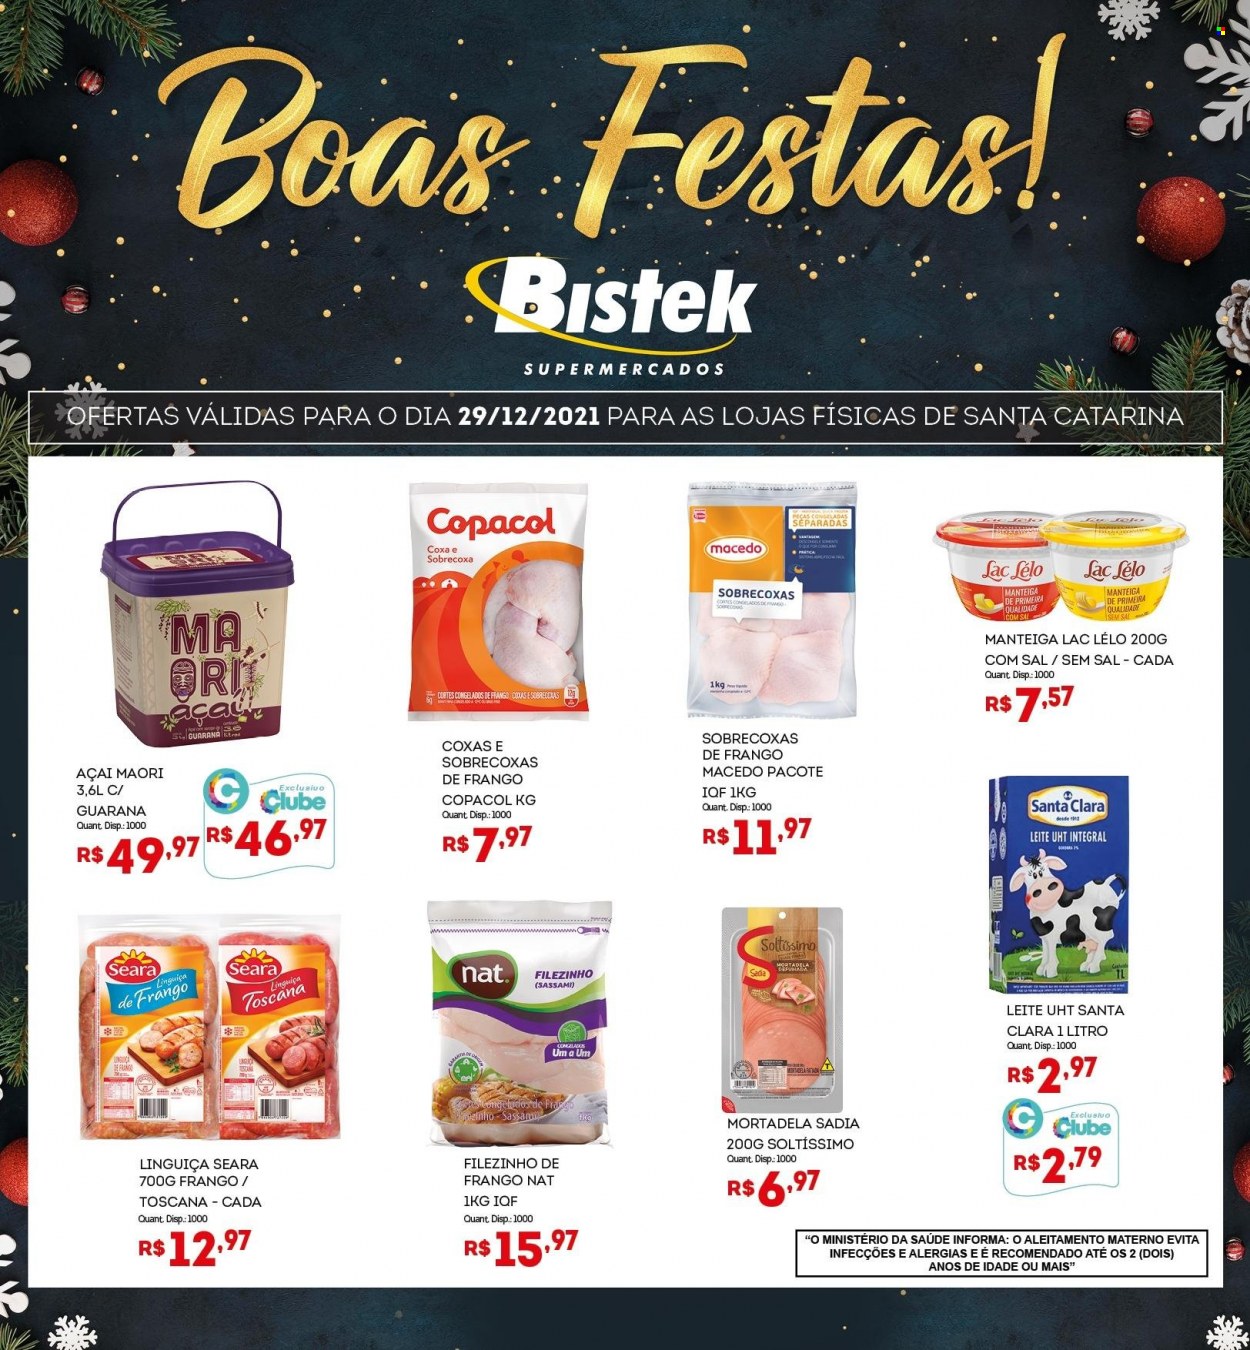 thumbnail - Folheto Bistek Supermercados - 29/12/2021 - 29/12/2021 - Produtos em promoção - sobrecoxa, coxas de frango, perna de frango, mortadela, linguiça, leite, Guaraná. Página 1.